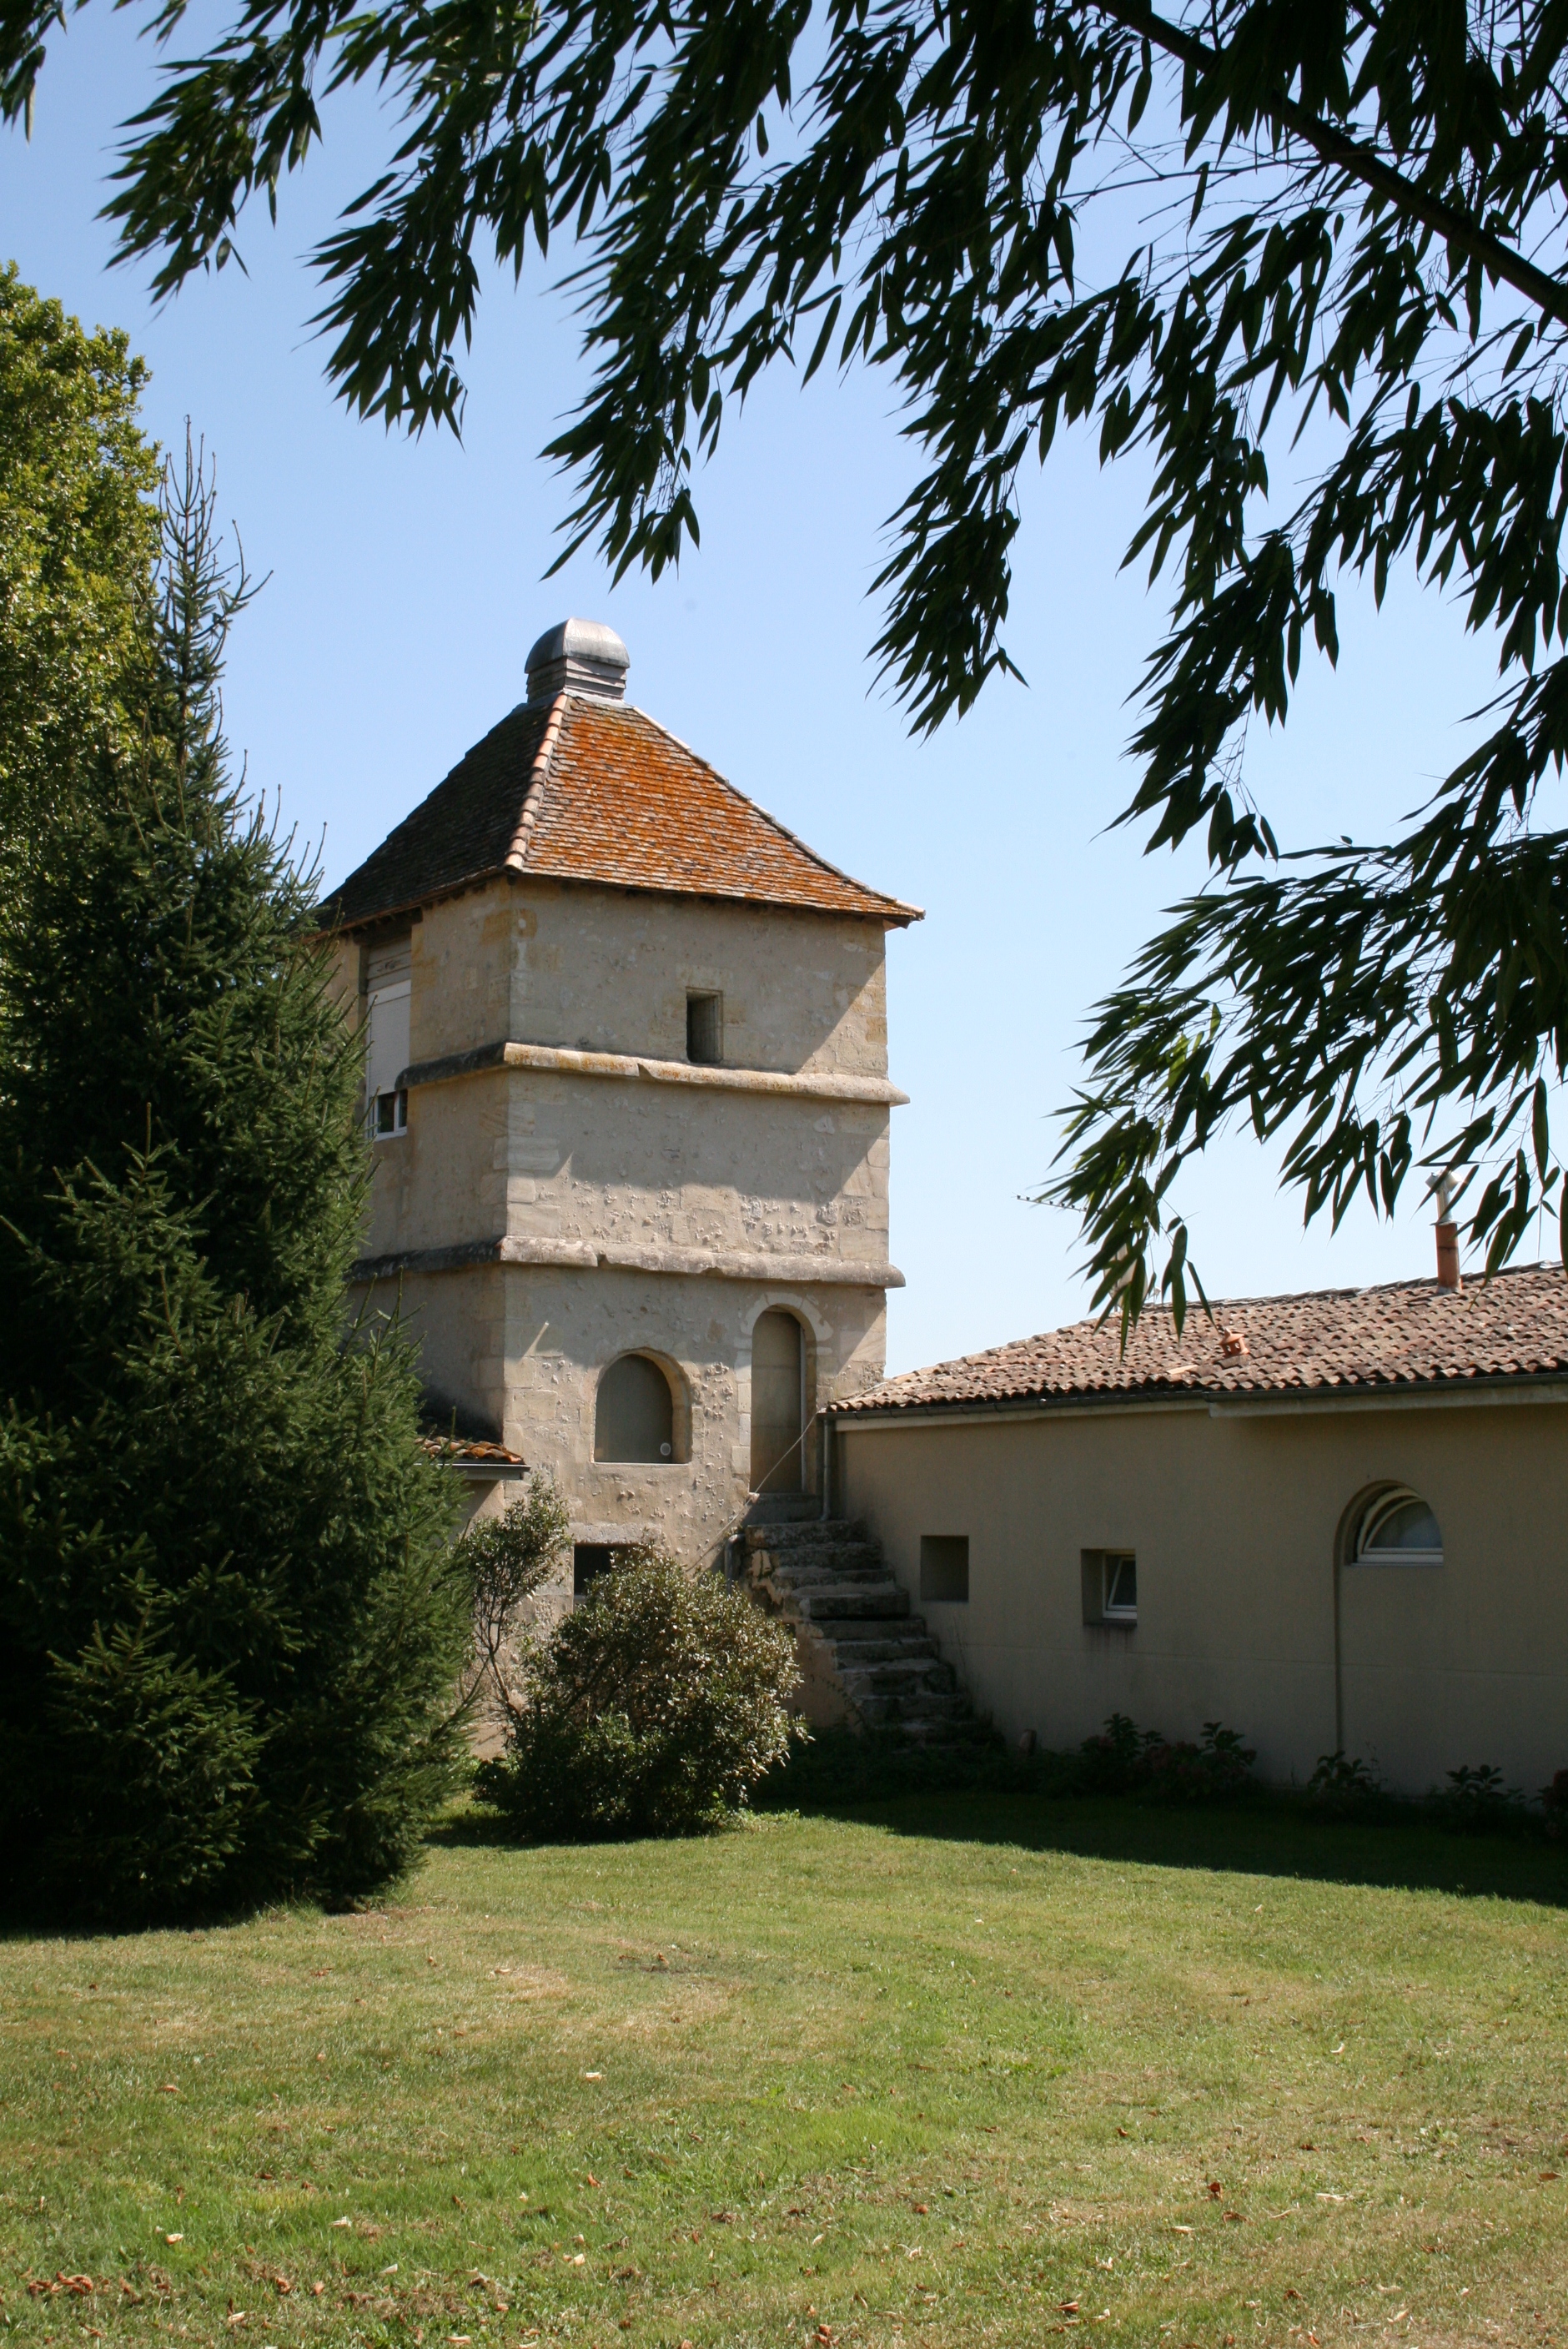 Château de Sallegourde